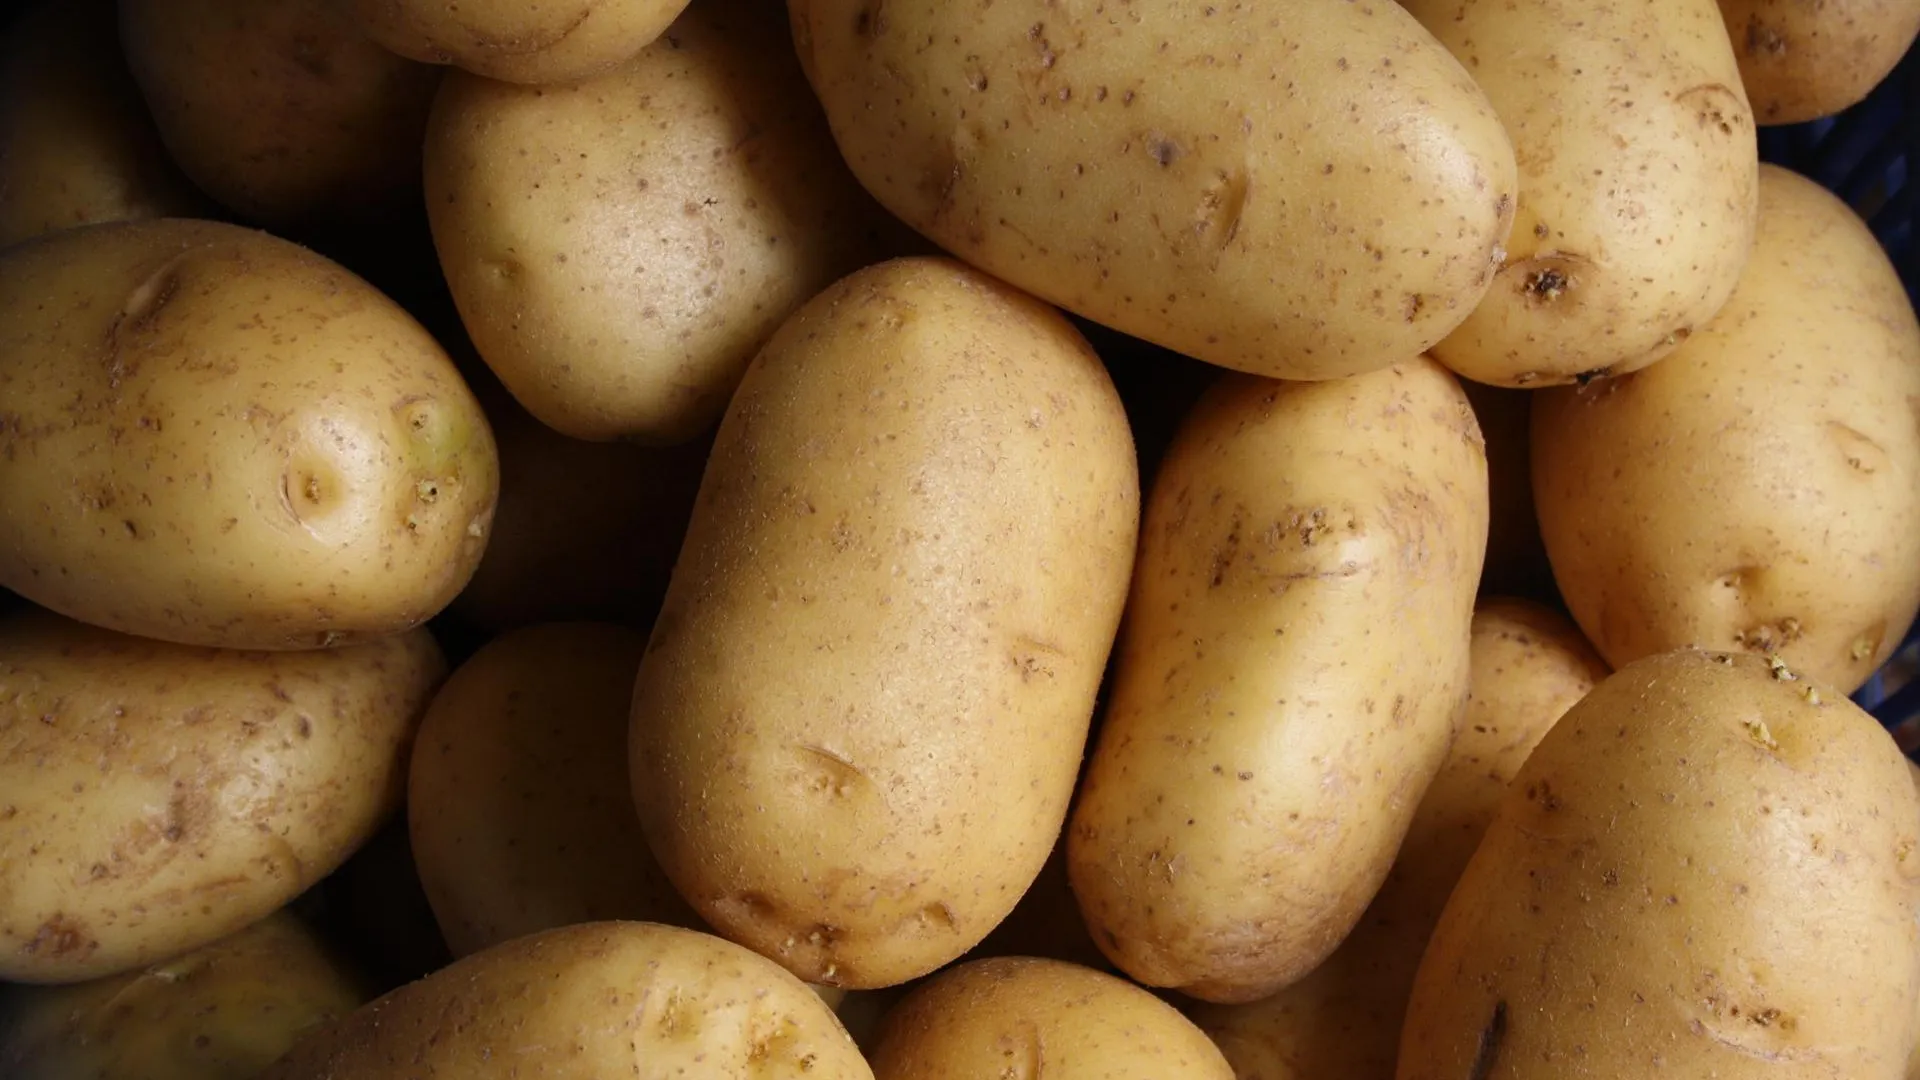 УНИАН: цена на картофель на Украине выросла почти в 4 раза за год